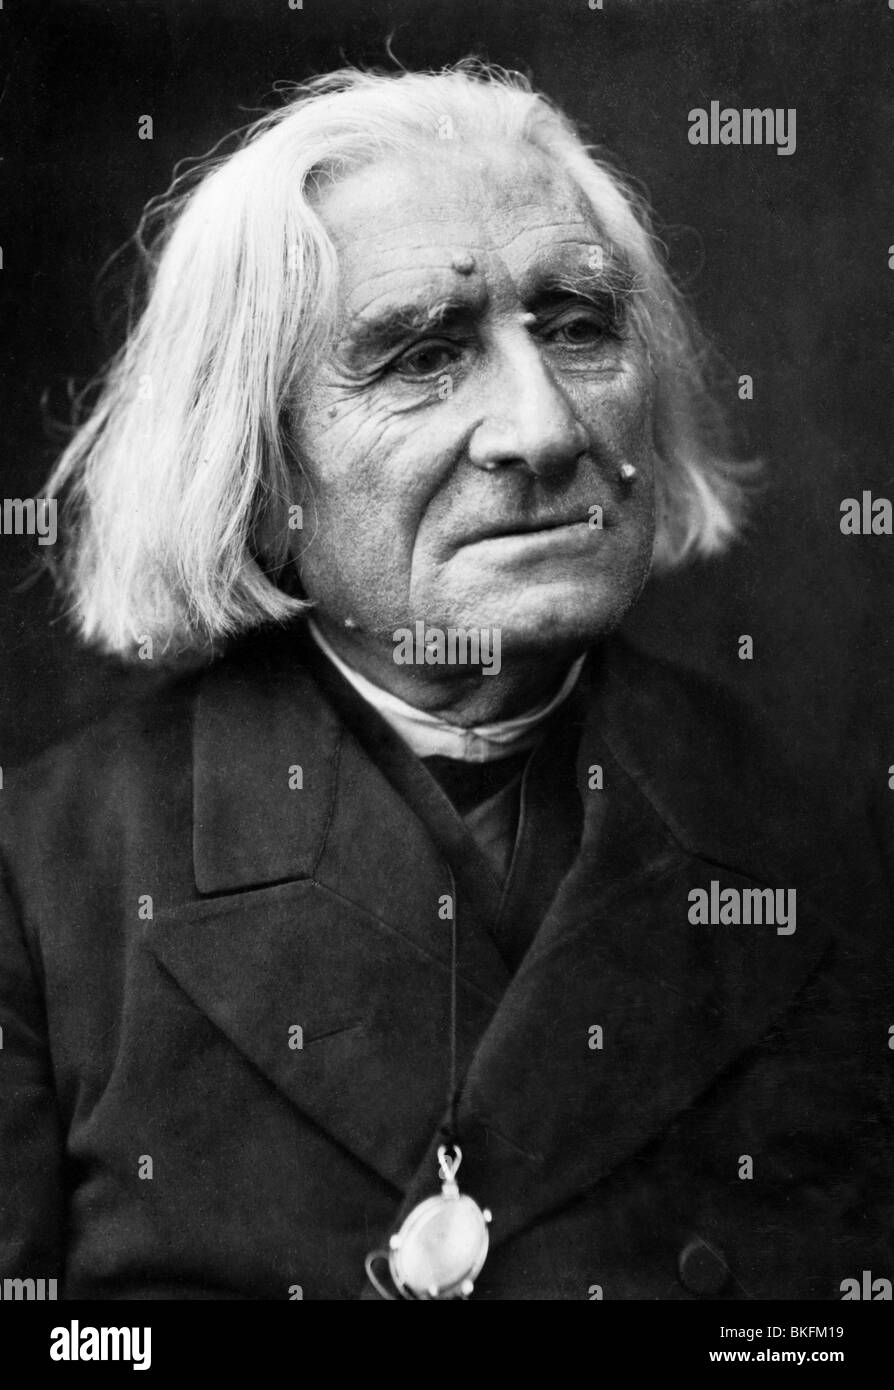 Liszt, Franz, 22.10.1811 - 31.7.1886, compositore e pianista ungherese, ritratto, fotografia di L. Held, Weimar, circa 1885, Foto Stock